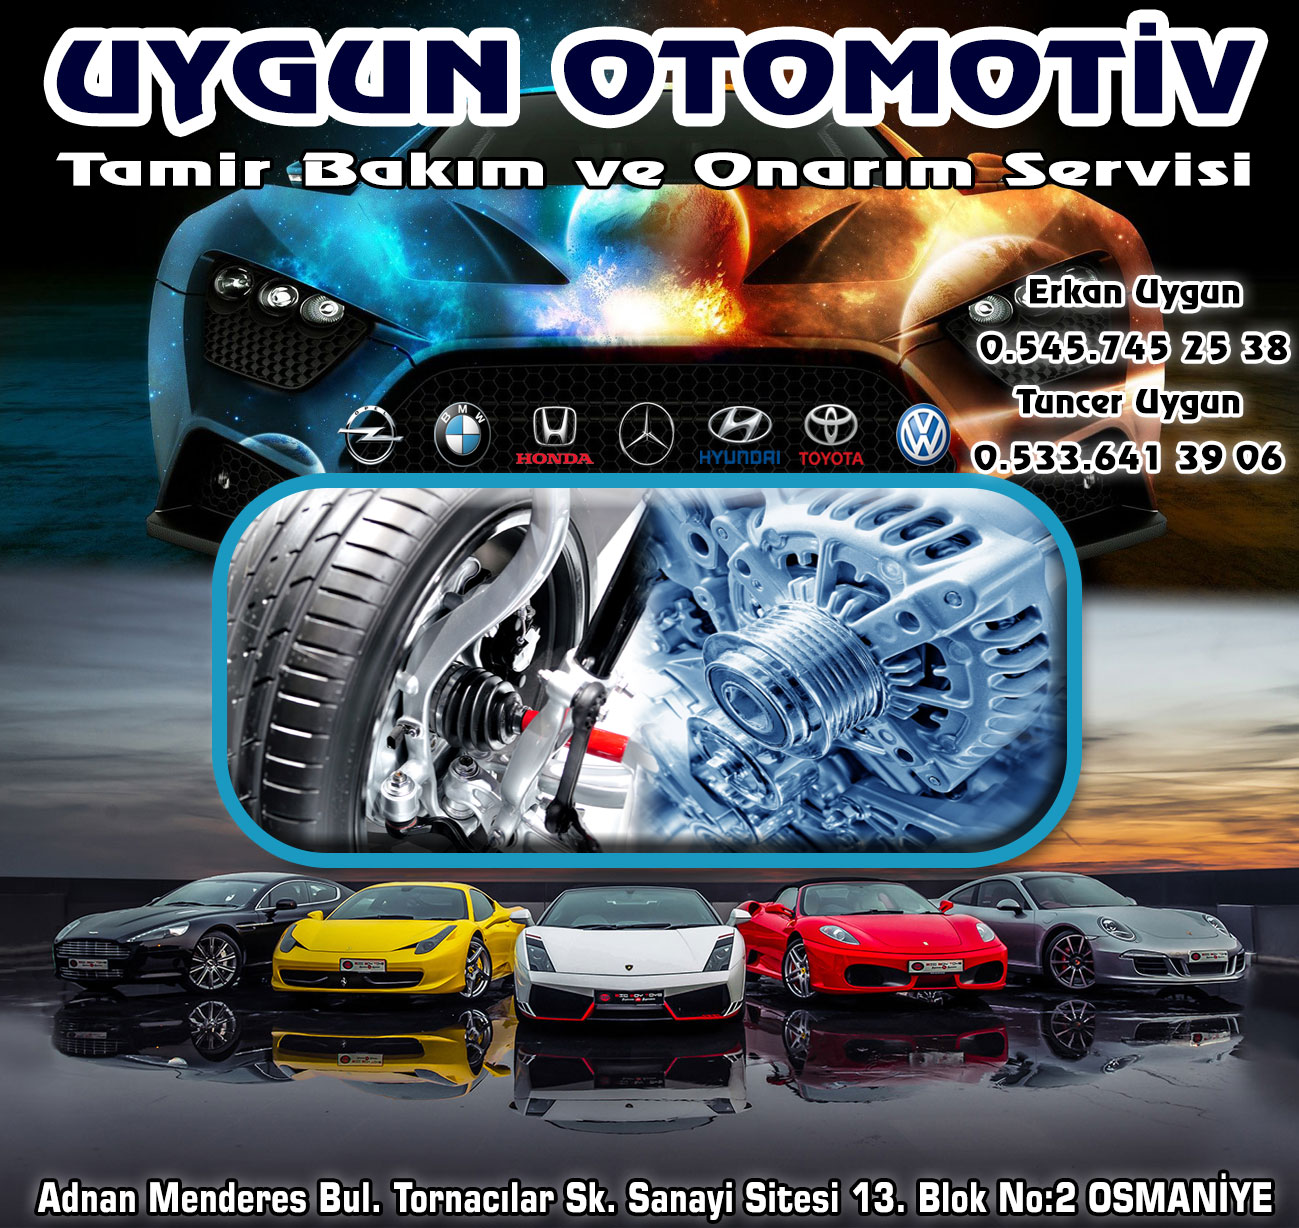 uygun-otomotiv-osmaniye